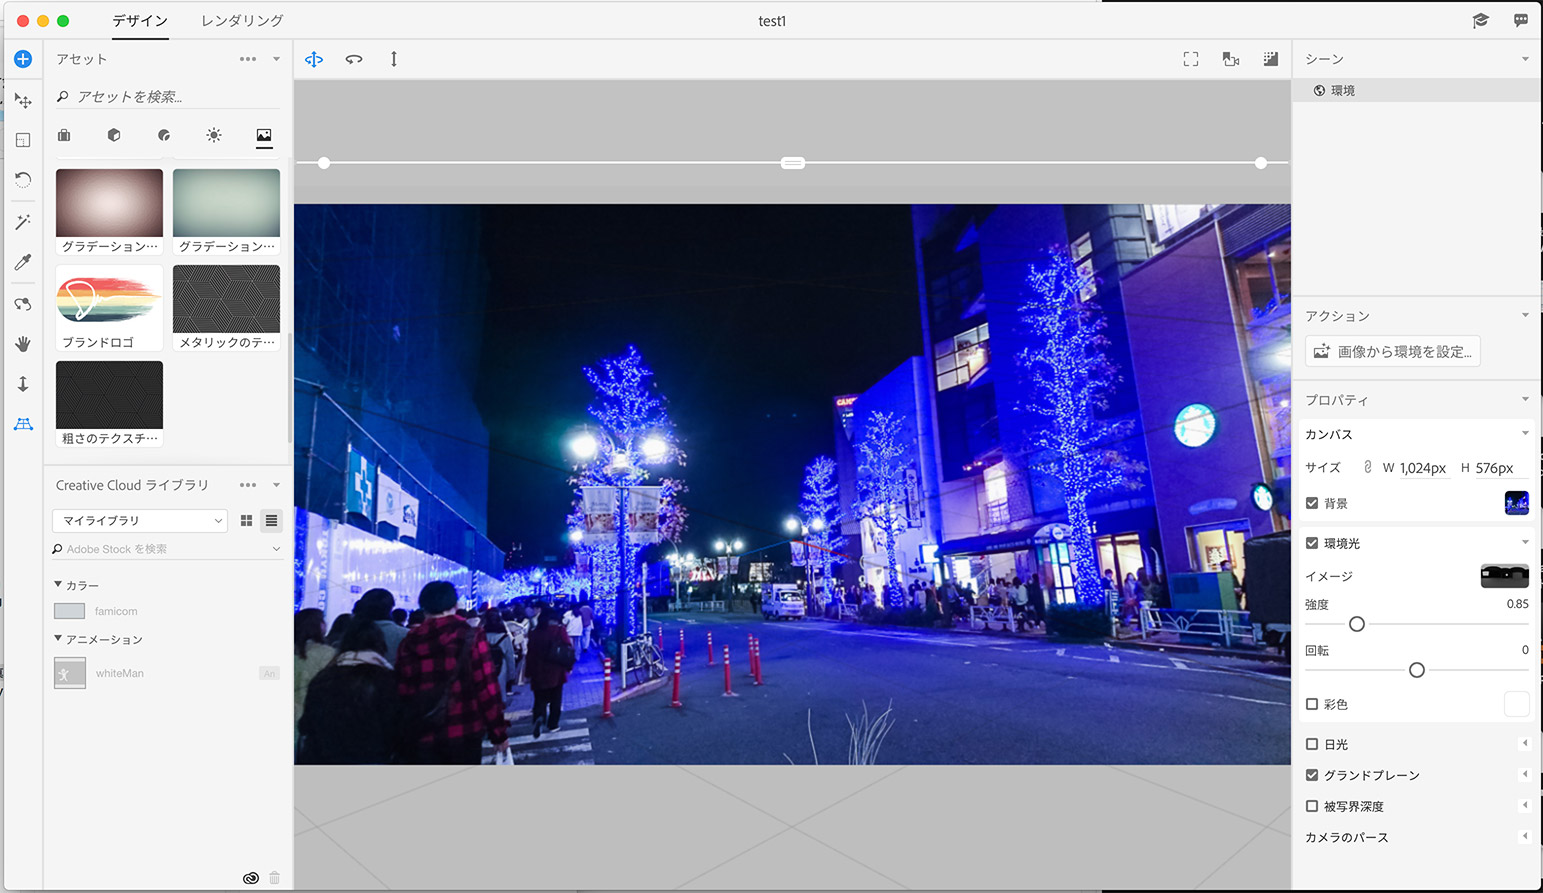 Adobe のレンダリングソフト Dimension Cc の背景画像関連の機能が使いやすい件 Qiita